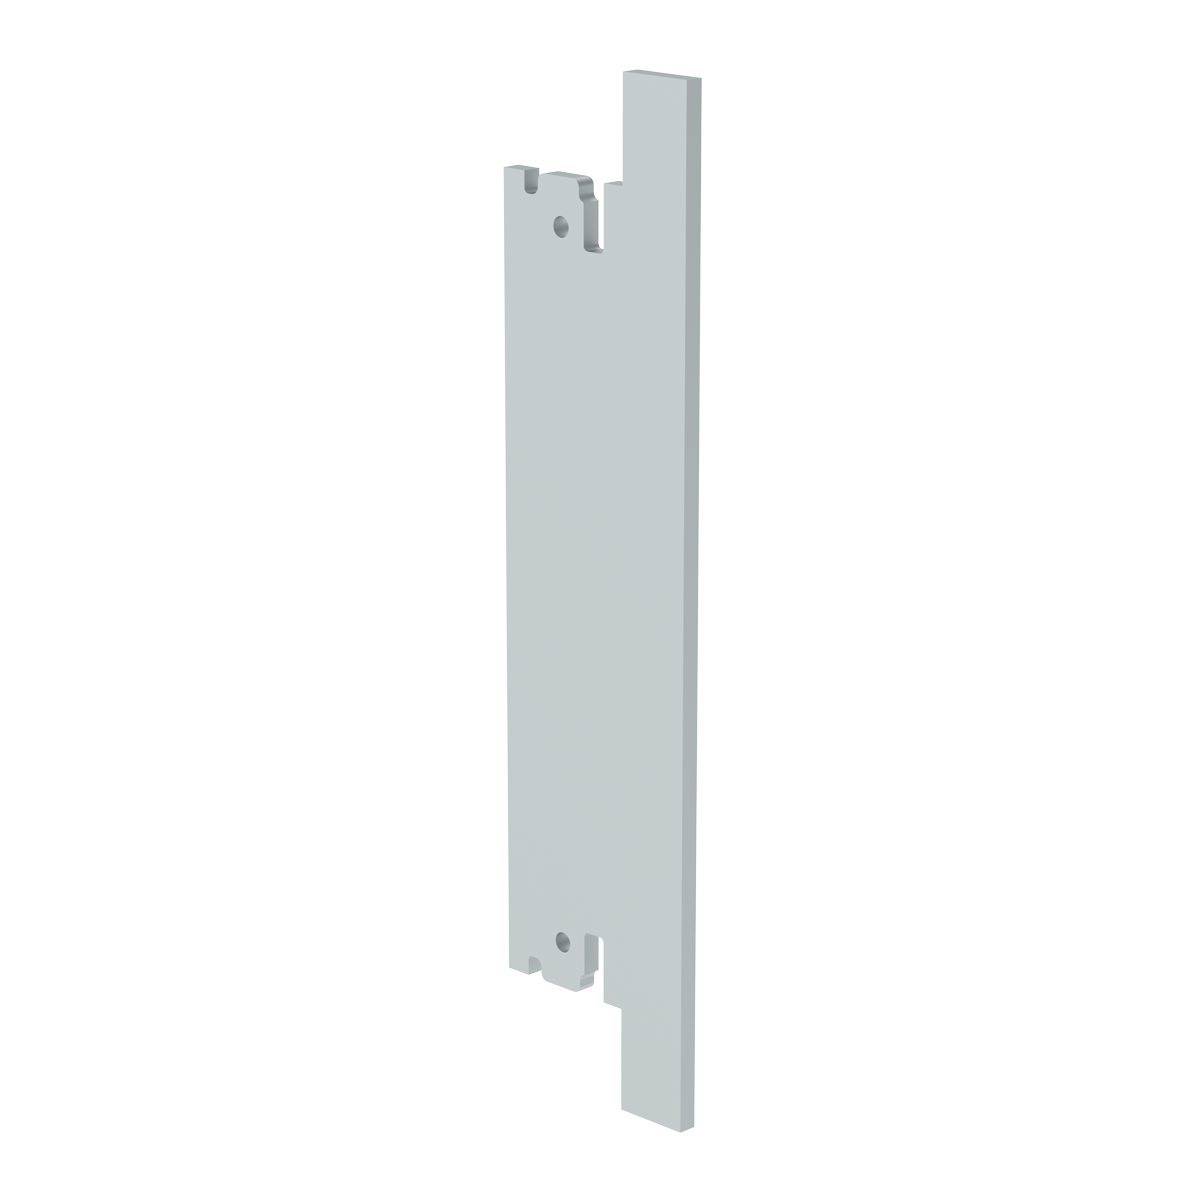 Лицевая панель 3U6HP под инжектор-экстрактор тип V-2/V-W верх/низ